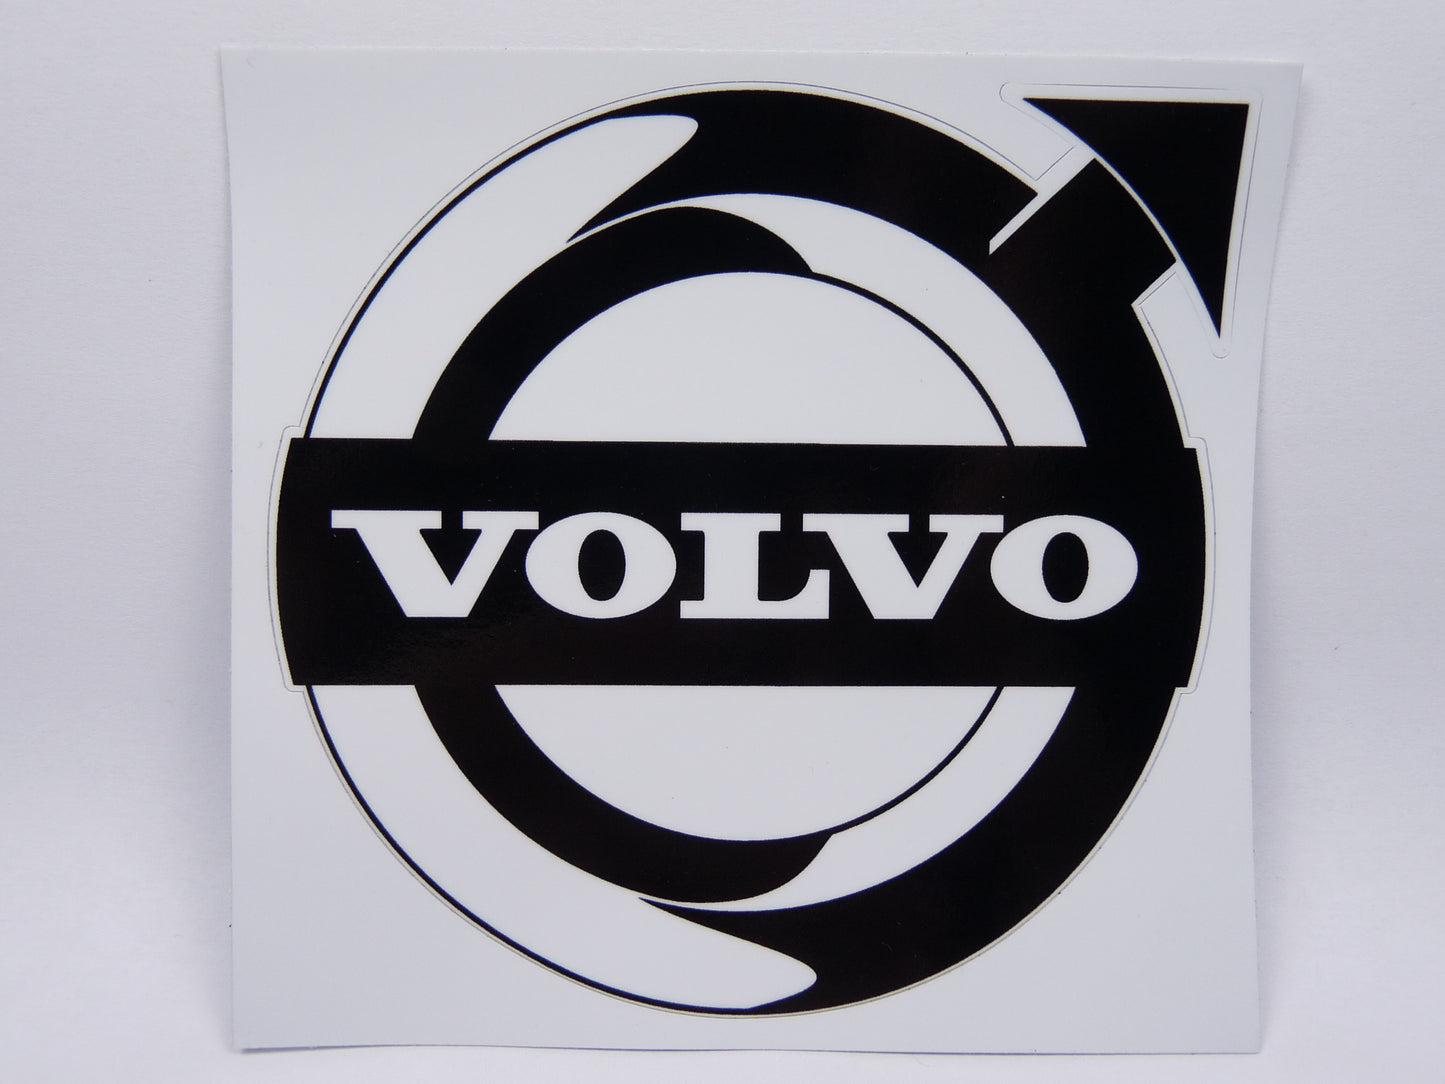 STK30 Sticker Autocollant : logo Volvo largeur environ 10.4 cm hauteur environ 10.2 cm